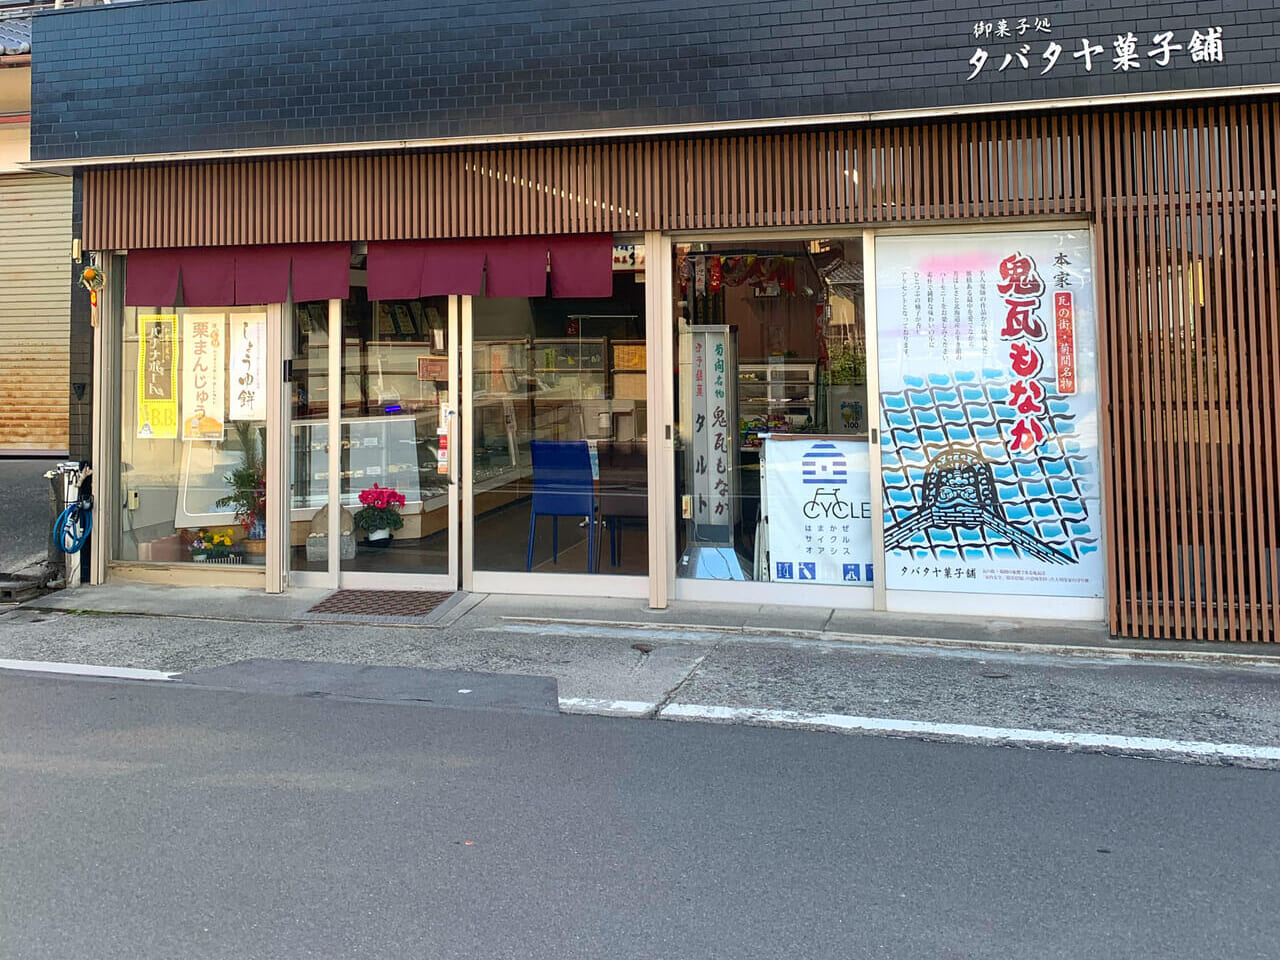 菊間町で90年以上の歴史を誇る和菓子と洋菓子のお店「タバタヤ菓子舗」